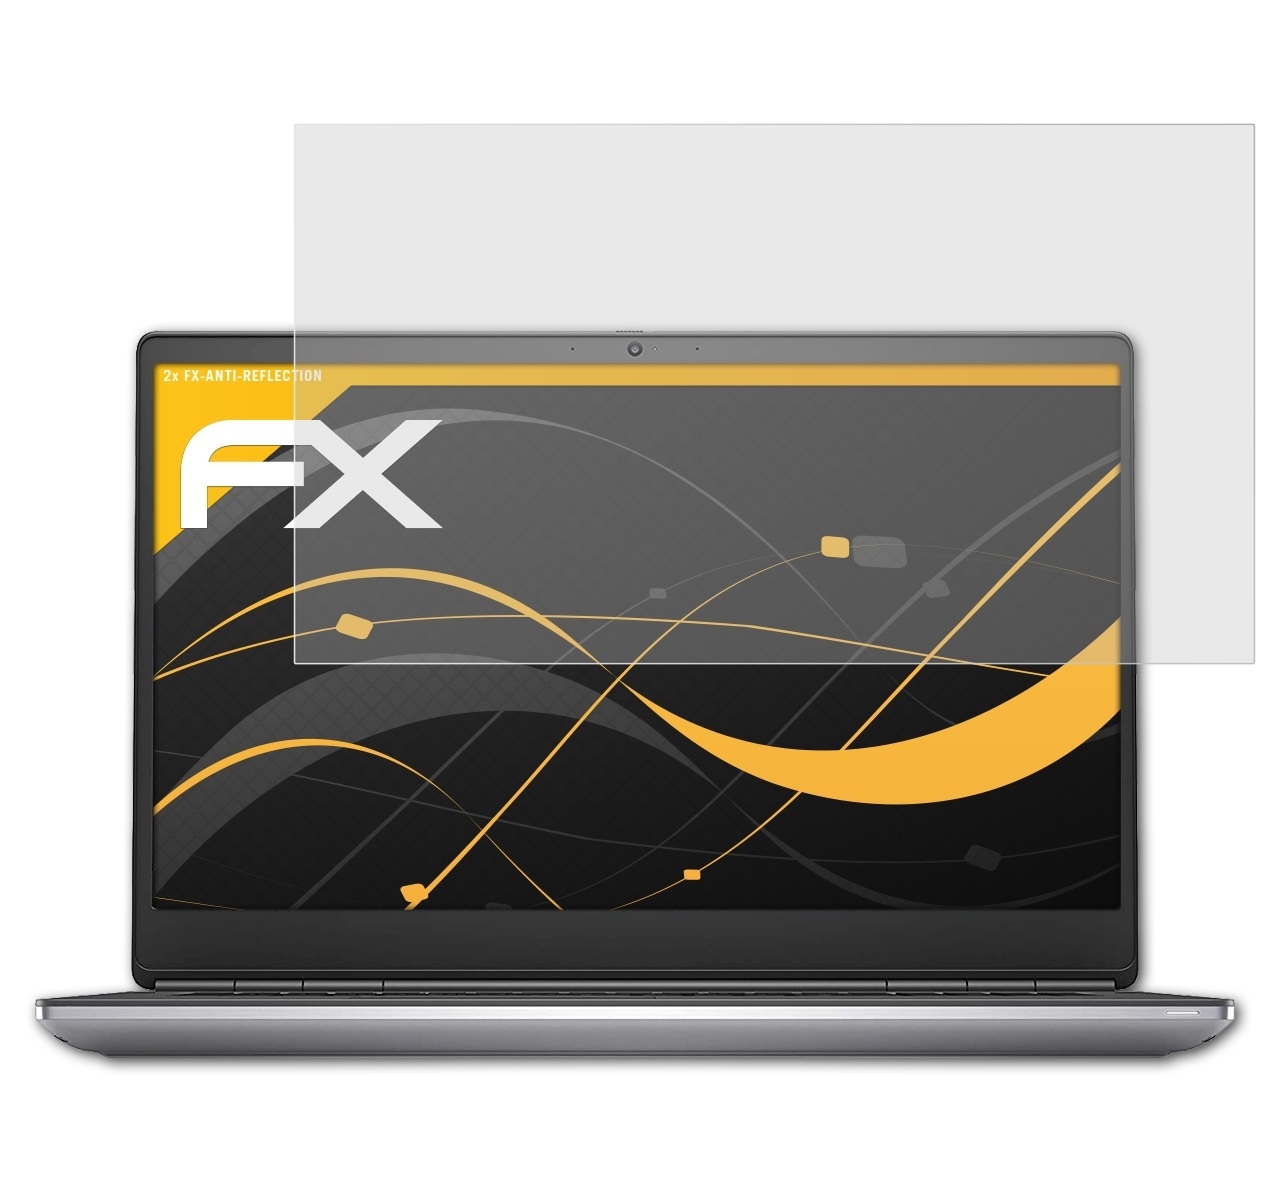 ATFOLIX 2x FX-Antireflex Precision Dell Displayschutz(für 7750)